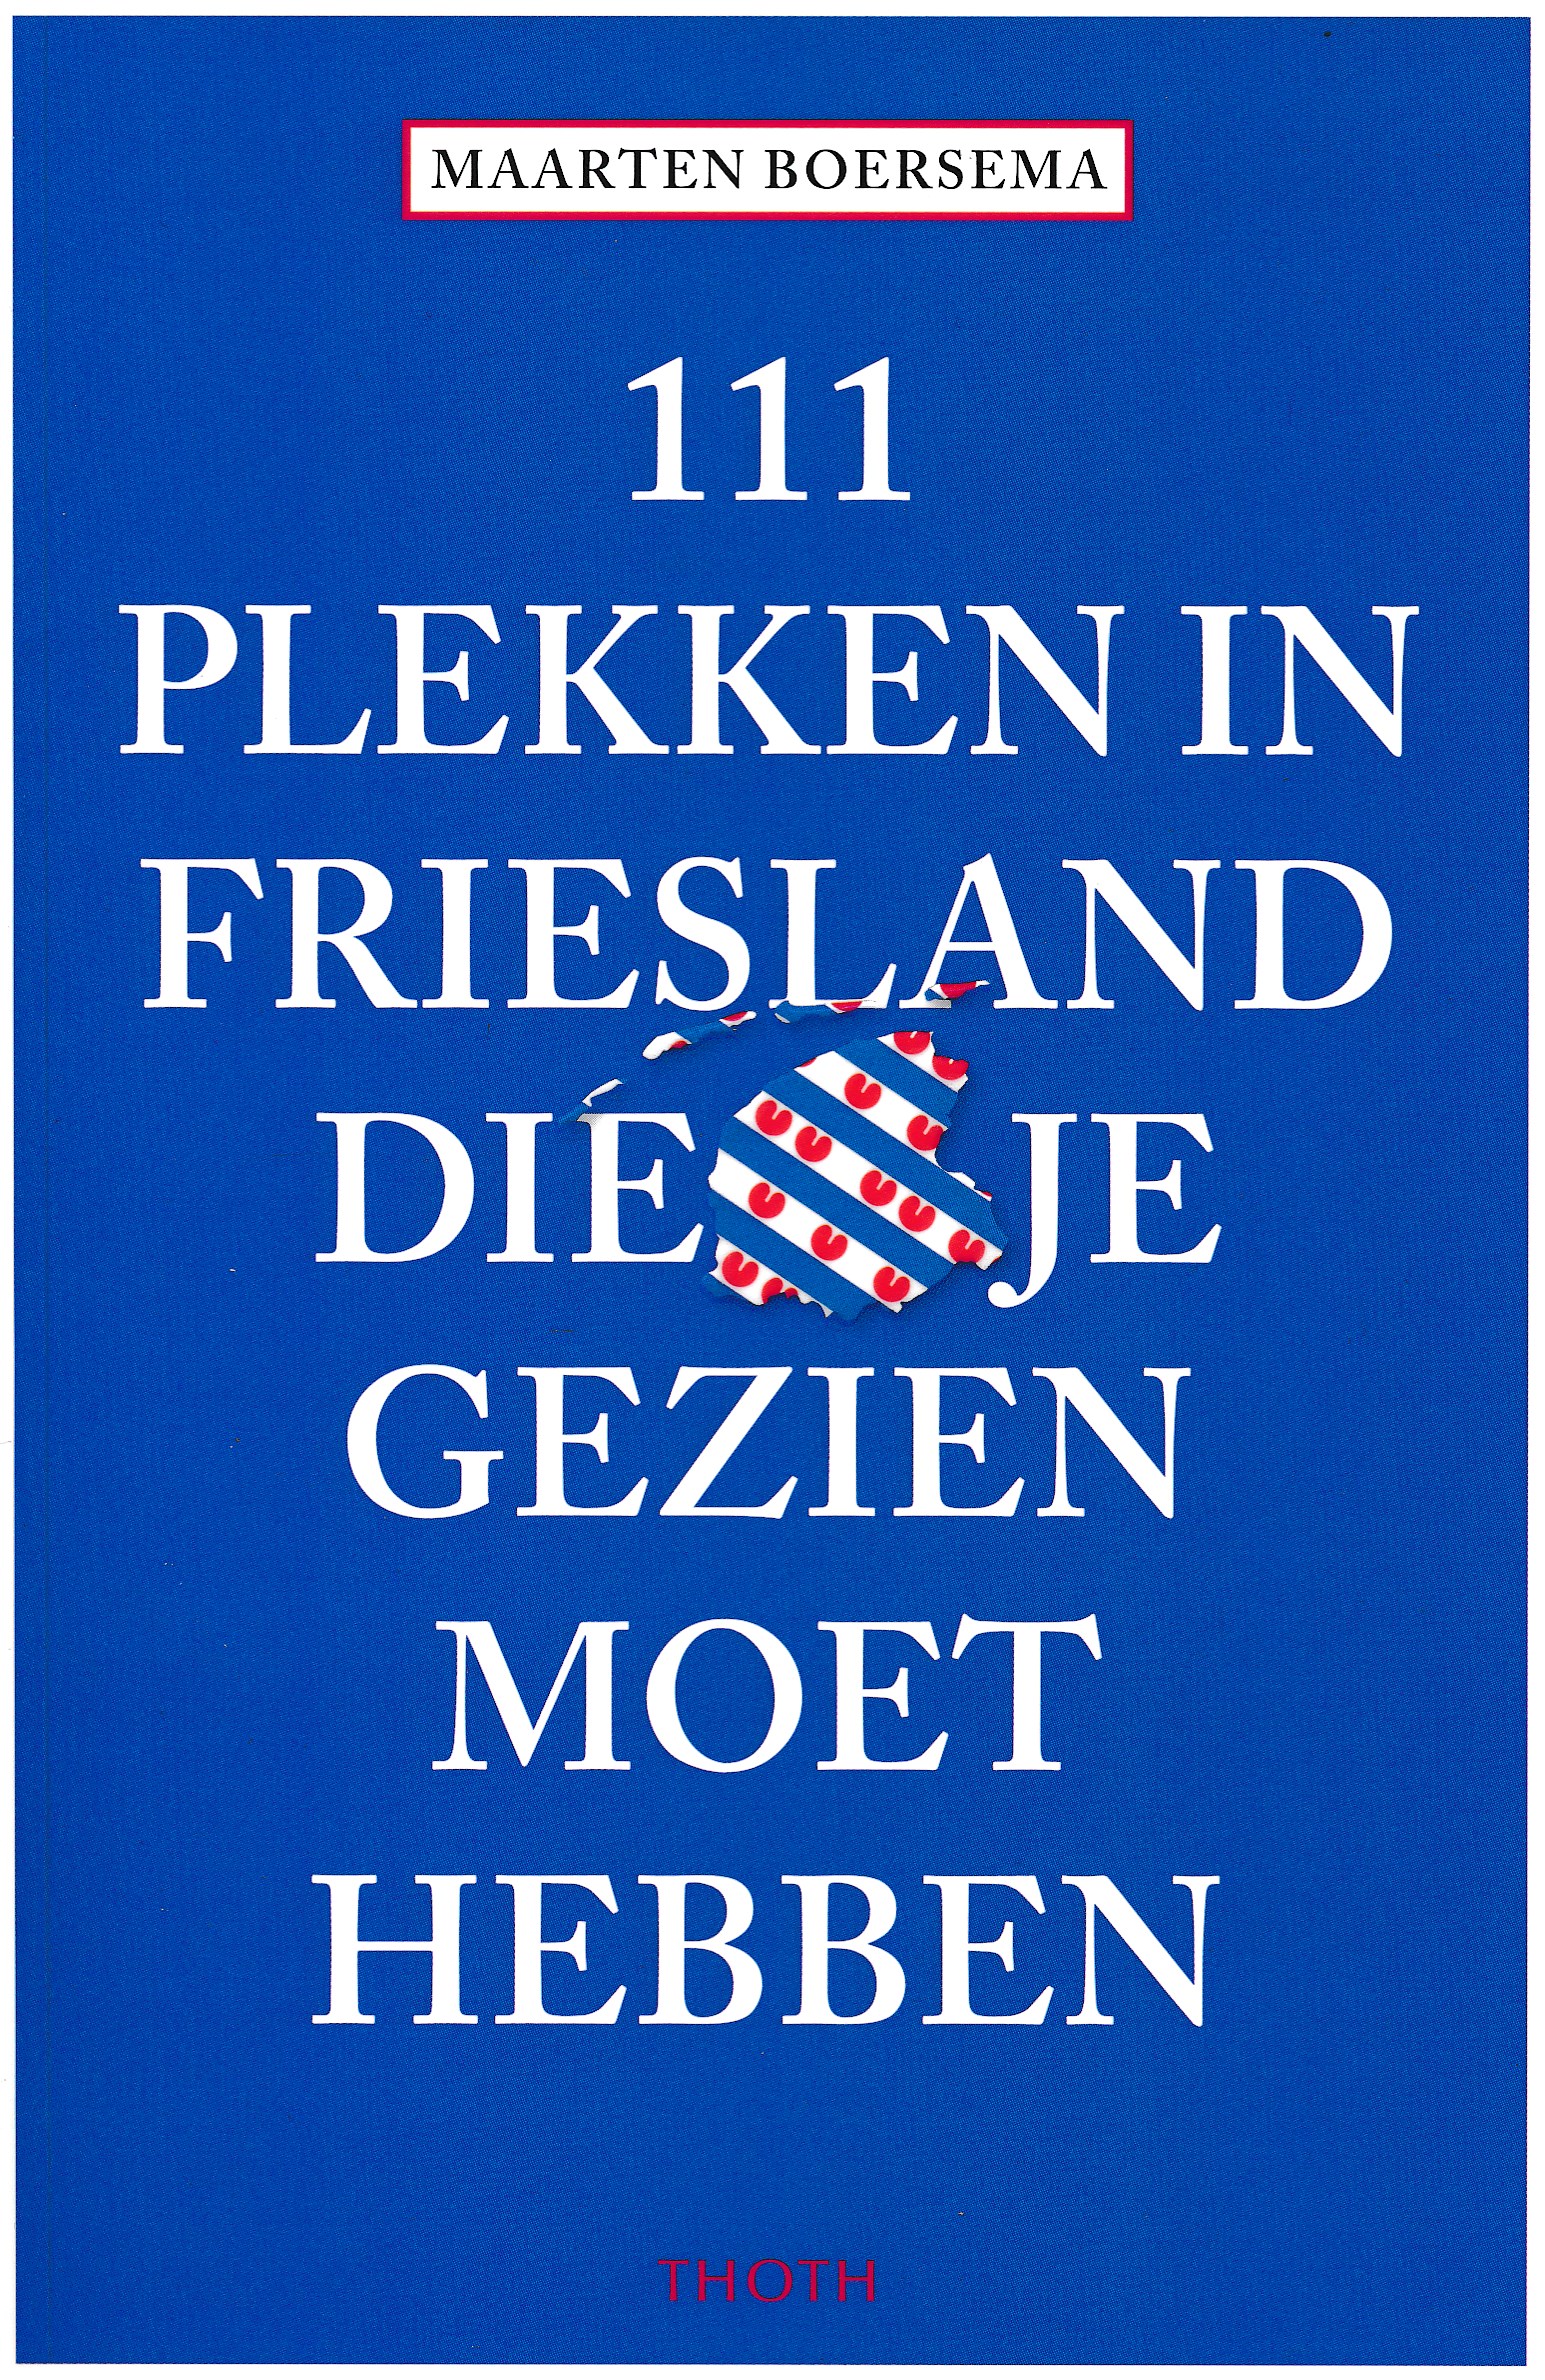 Online bestellen: Reisgids 111 plekken in Friesland die je gezien moet hebben | Thoth